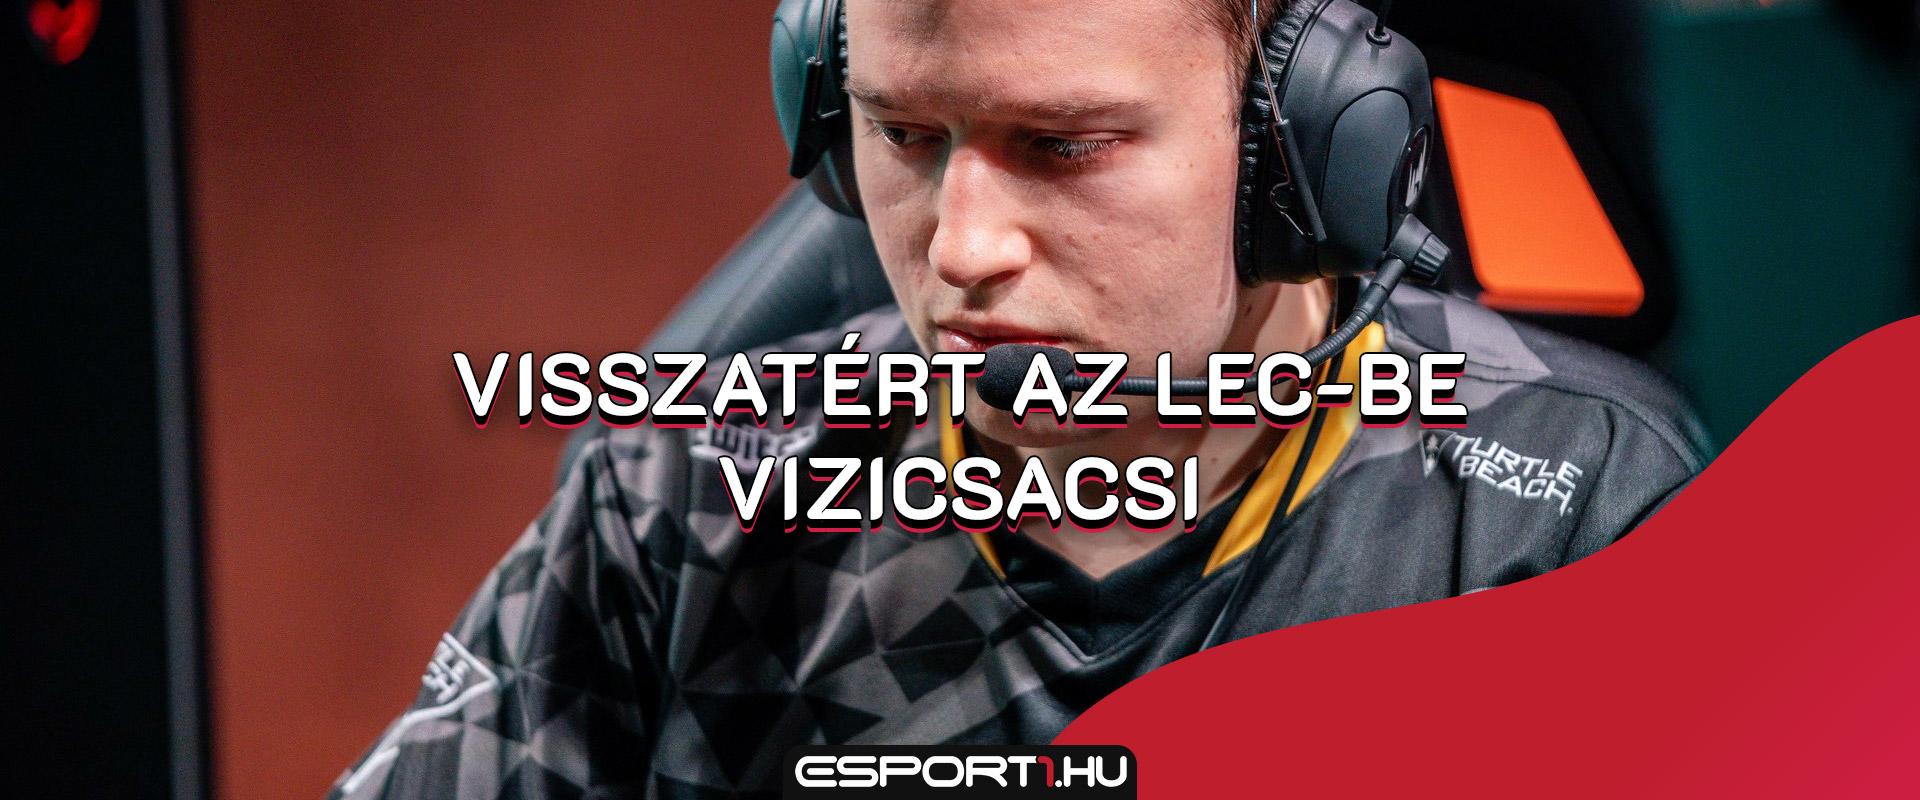 LoL: Visszatért az LEC-be Vizicsacsi, a magyar legenda